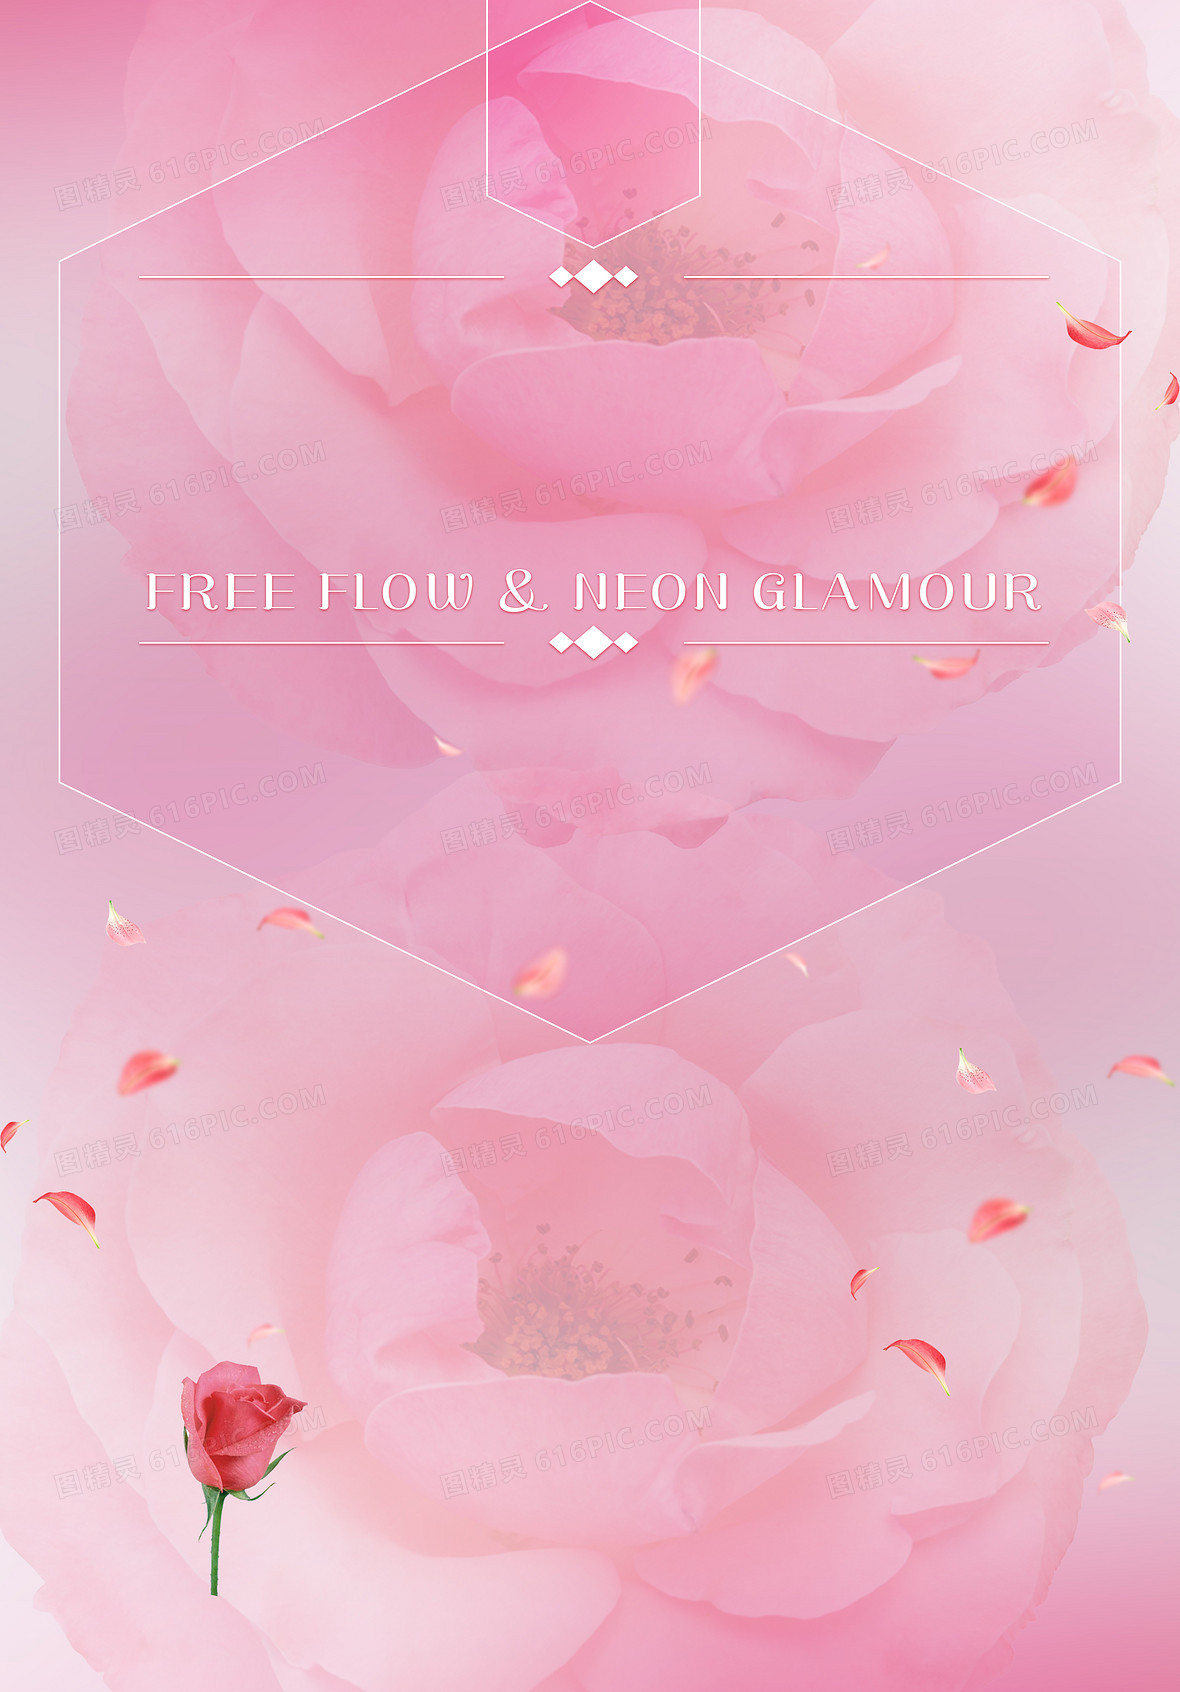 美容减肥海报背景素材jpgpsd粉色梦幻花朵背景素材jpgai美容企业广告